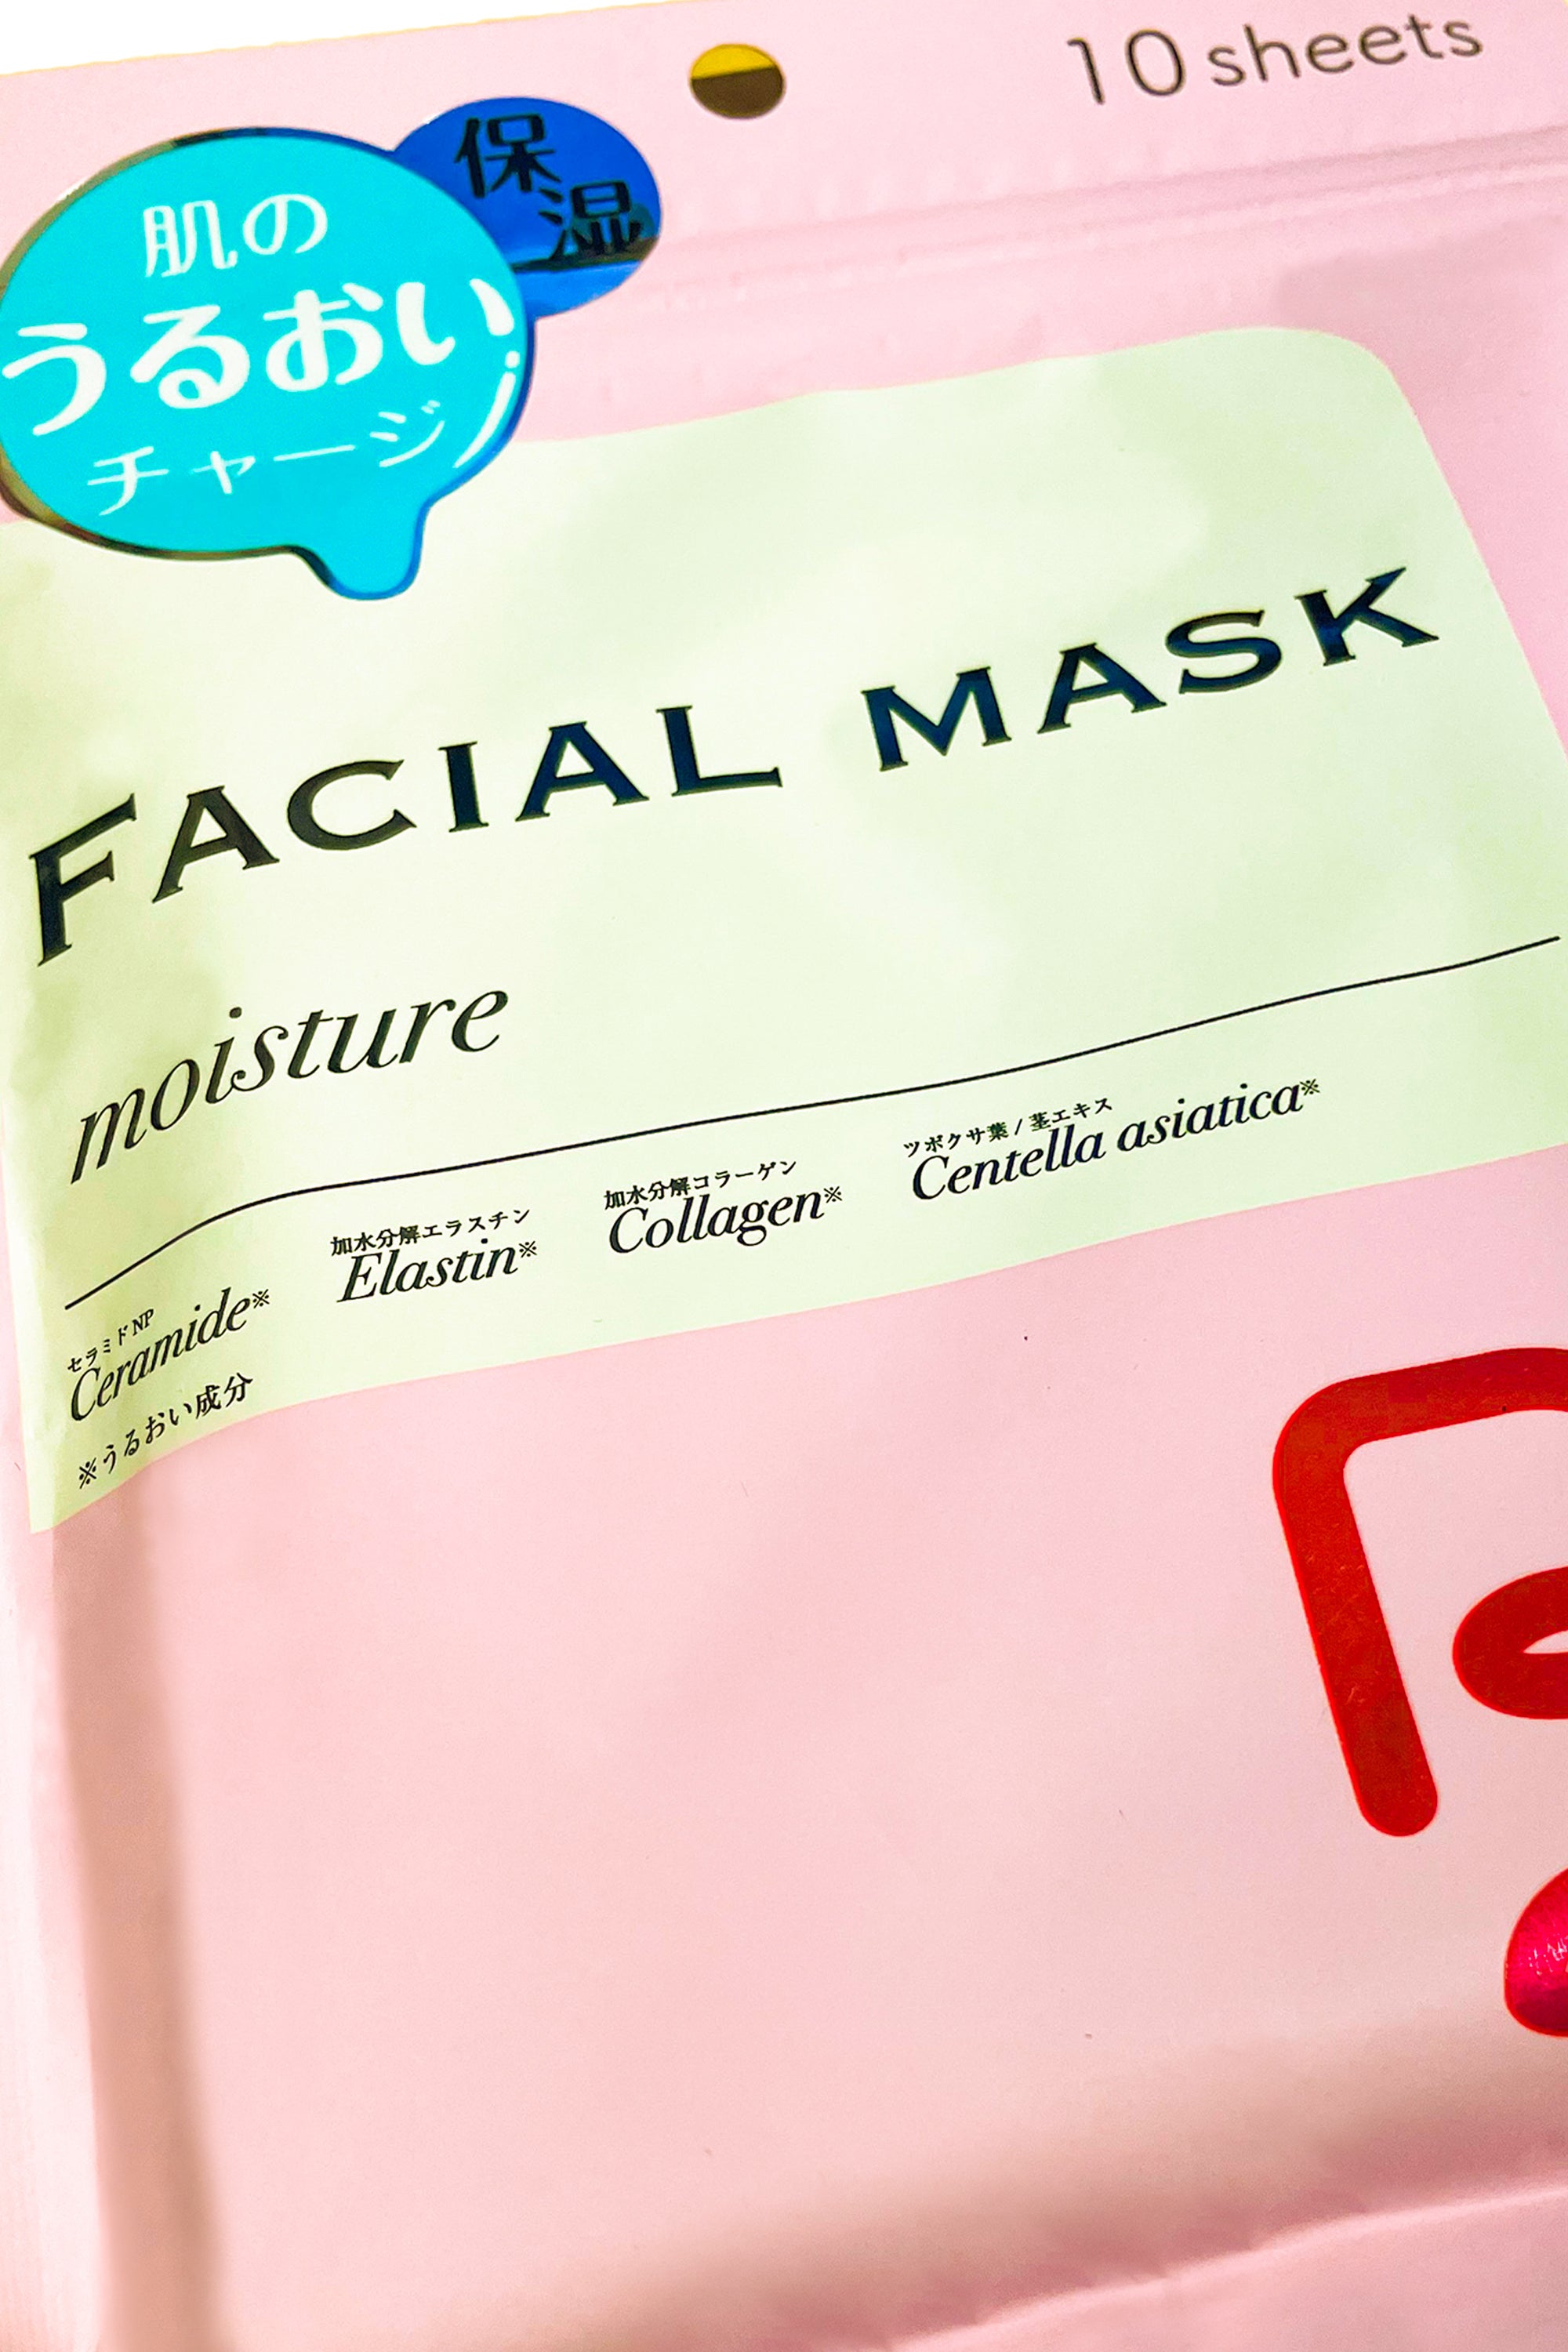 Japan B& Moisture Collagen Facial Mask